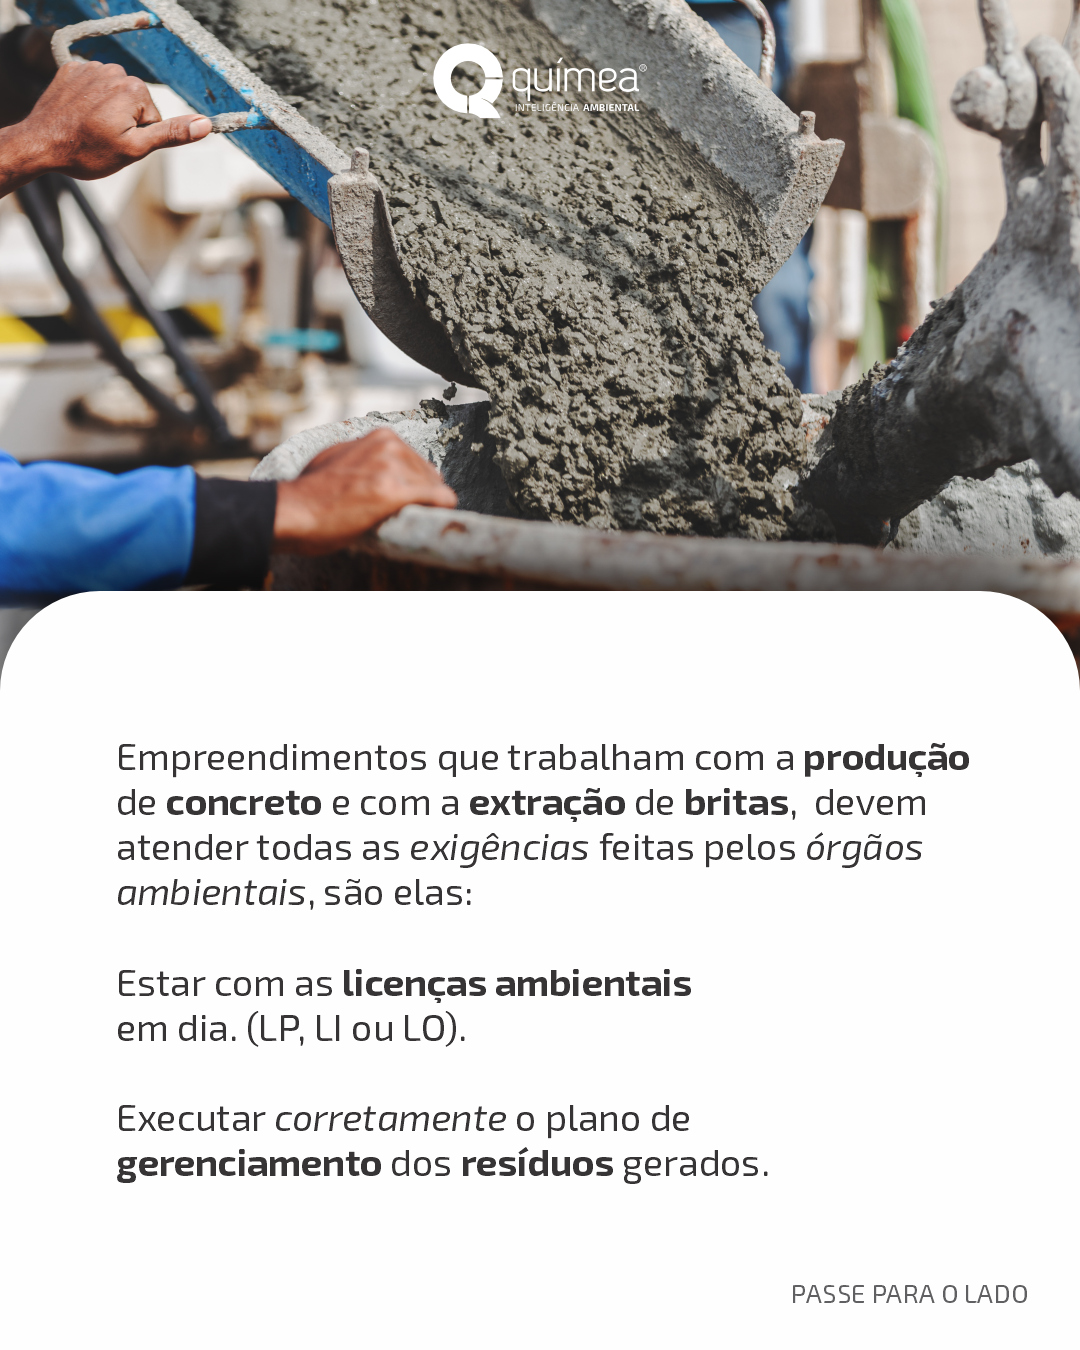 Britagem e usina de concreto: atividades licenciáveis do ramo da construção civil